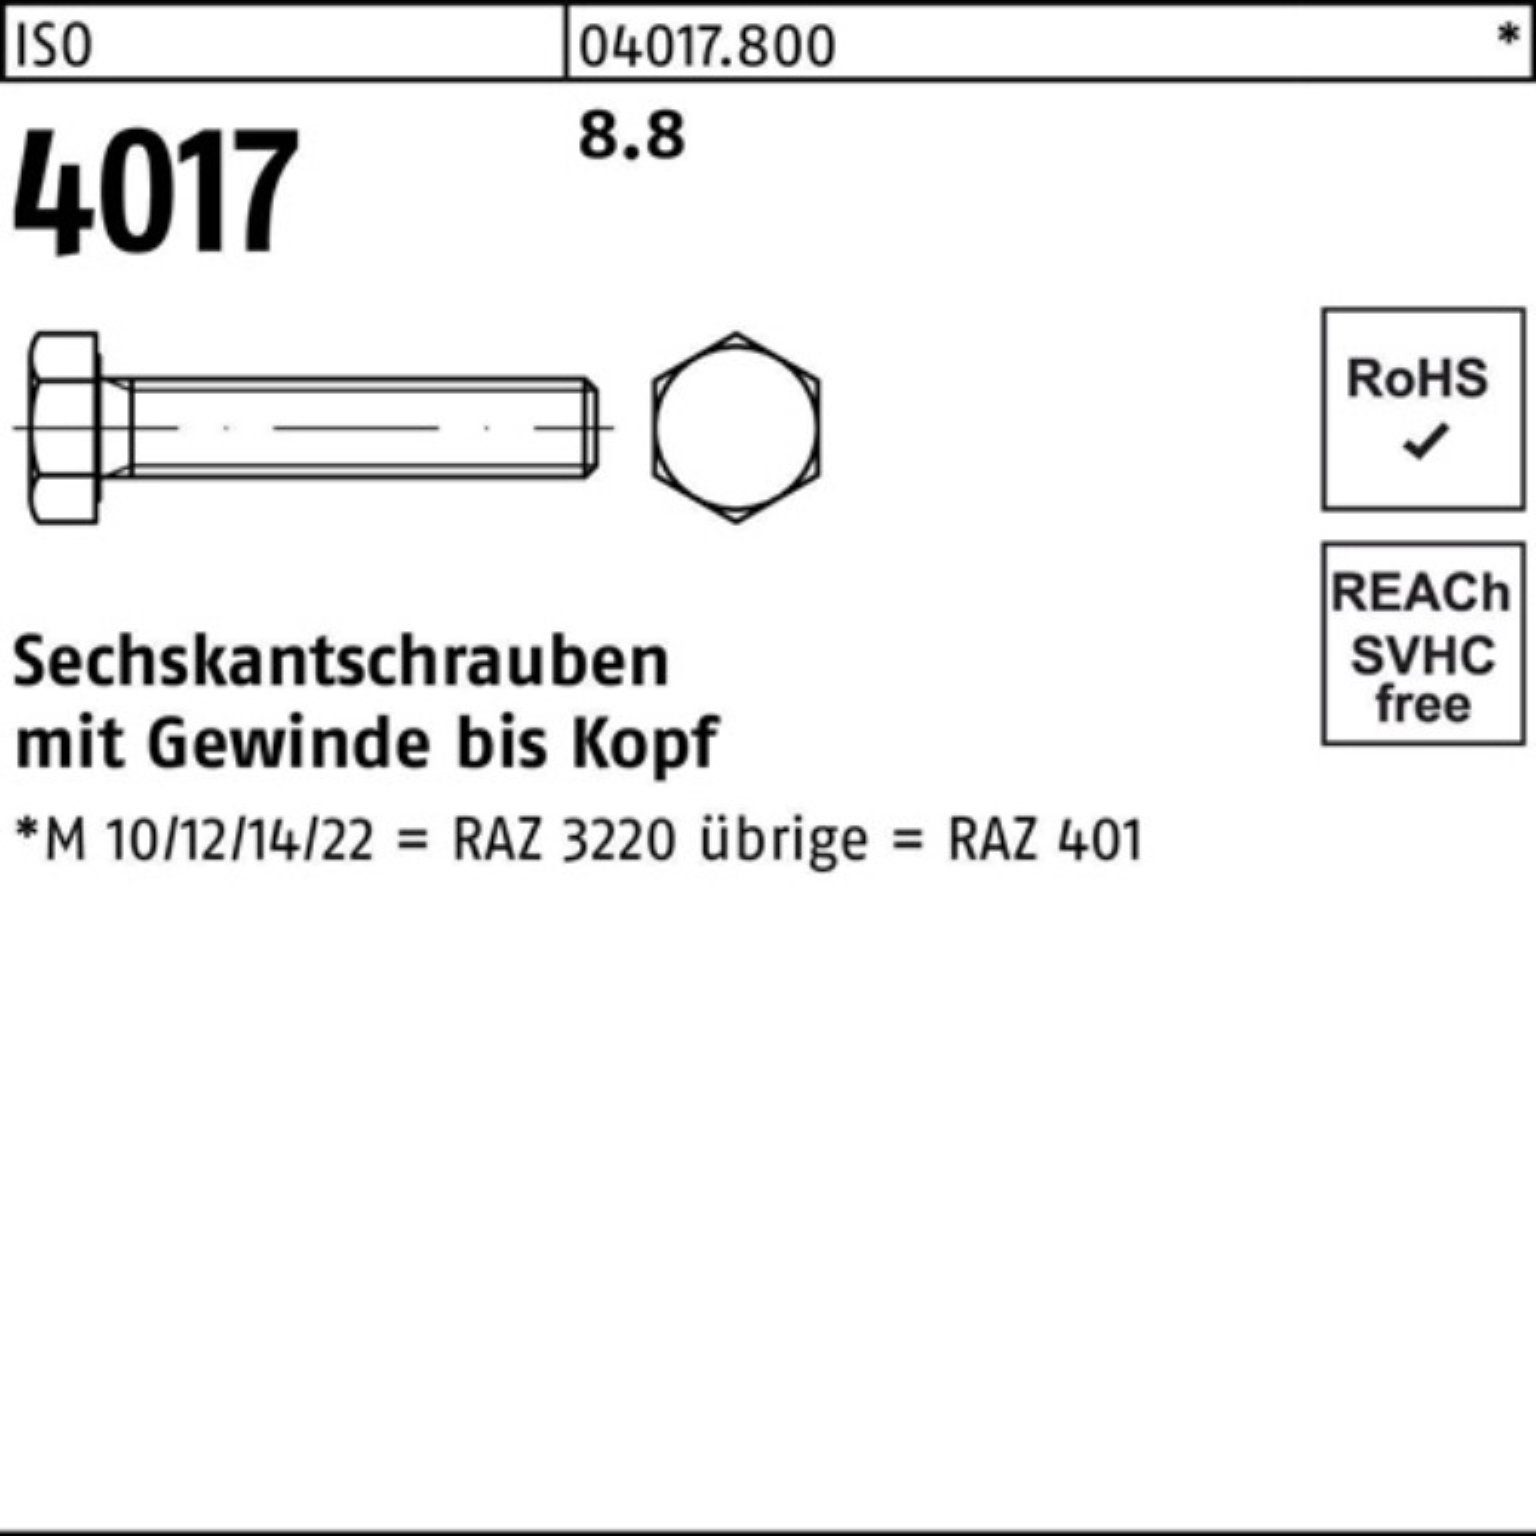 Bufab Sechskantschraube 50 M12x ISO Sechskantschraube 8.8 100er 4017 40 VG 100 ISO Stück Pack